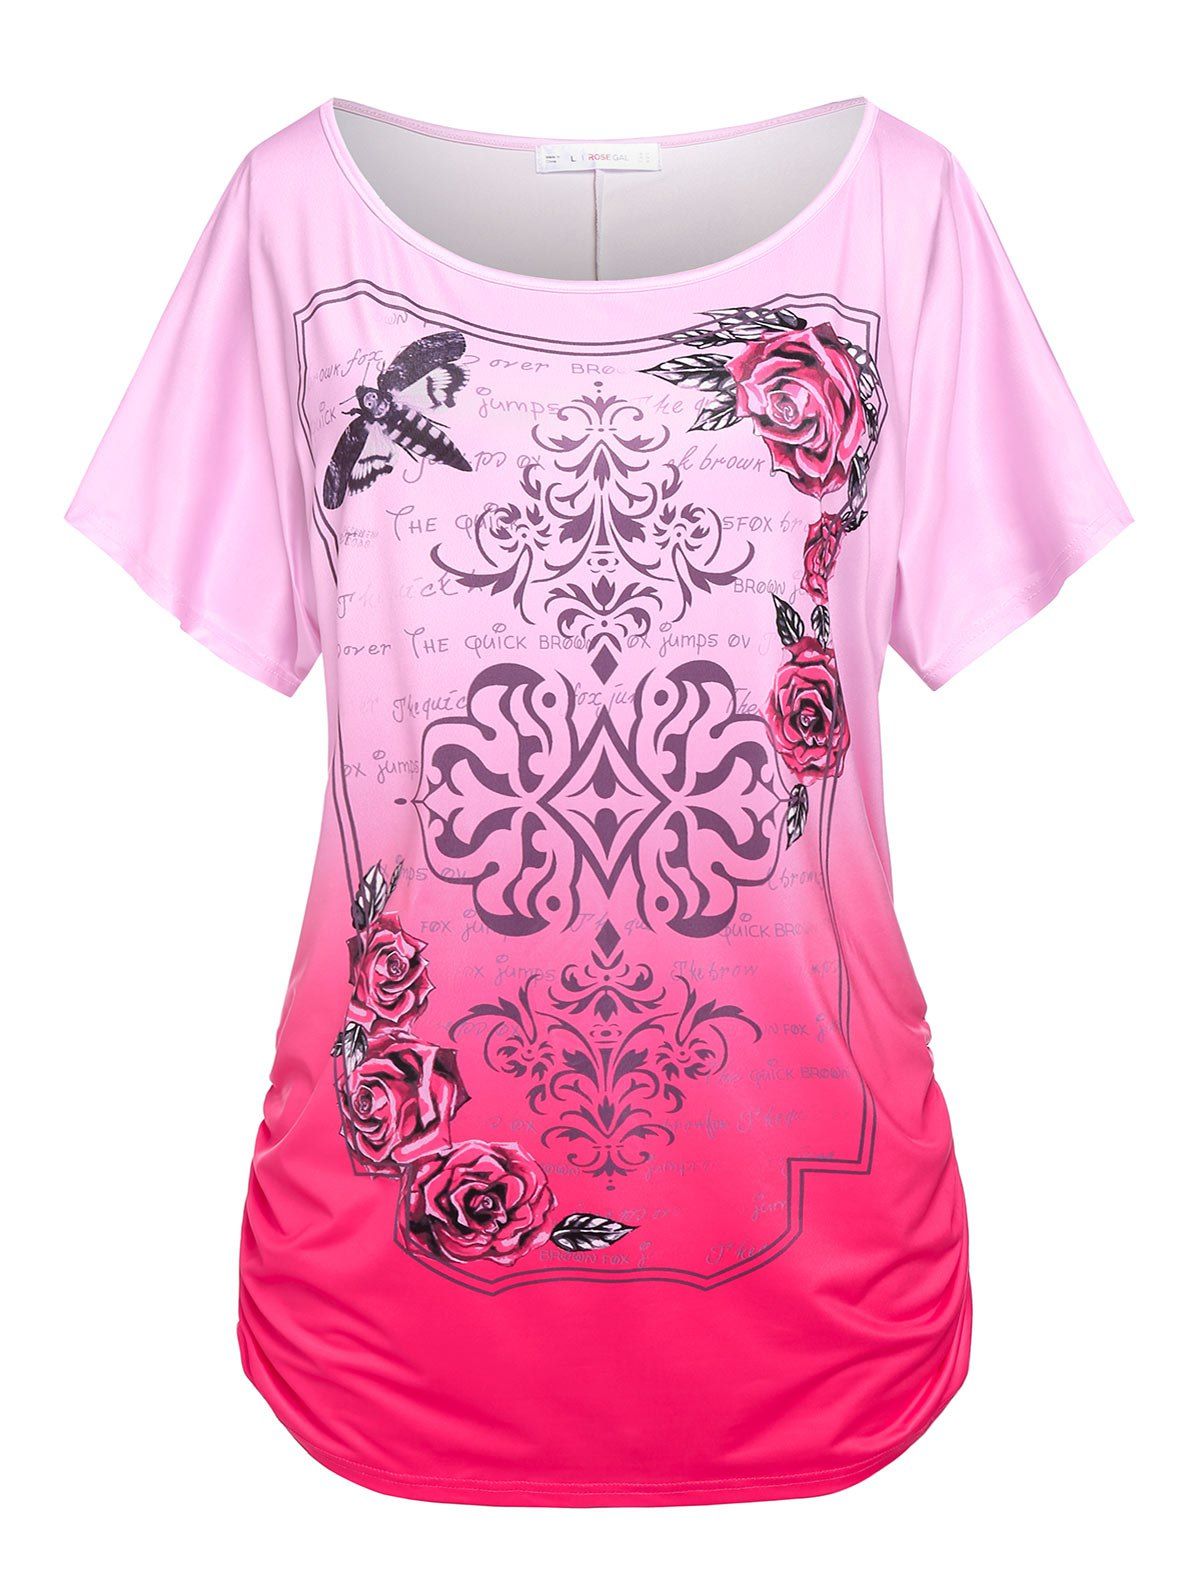 T-shirt Fleur Slogan de Grande Taille à Manches Chauve-souris - Rose clair 5X